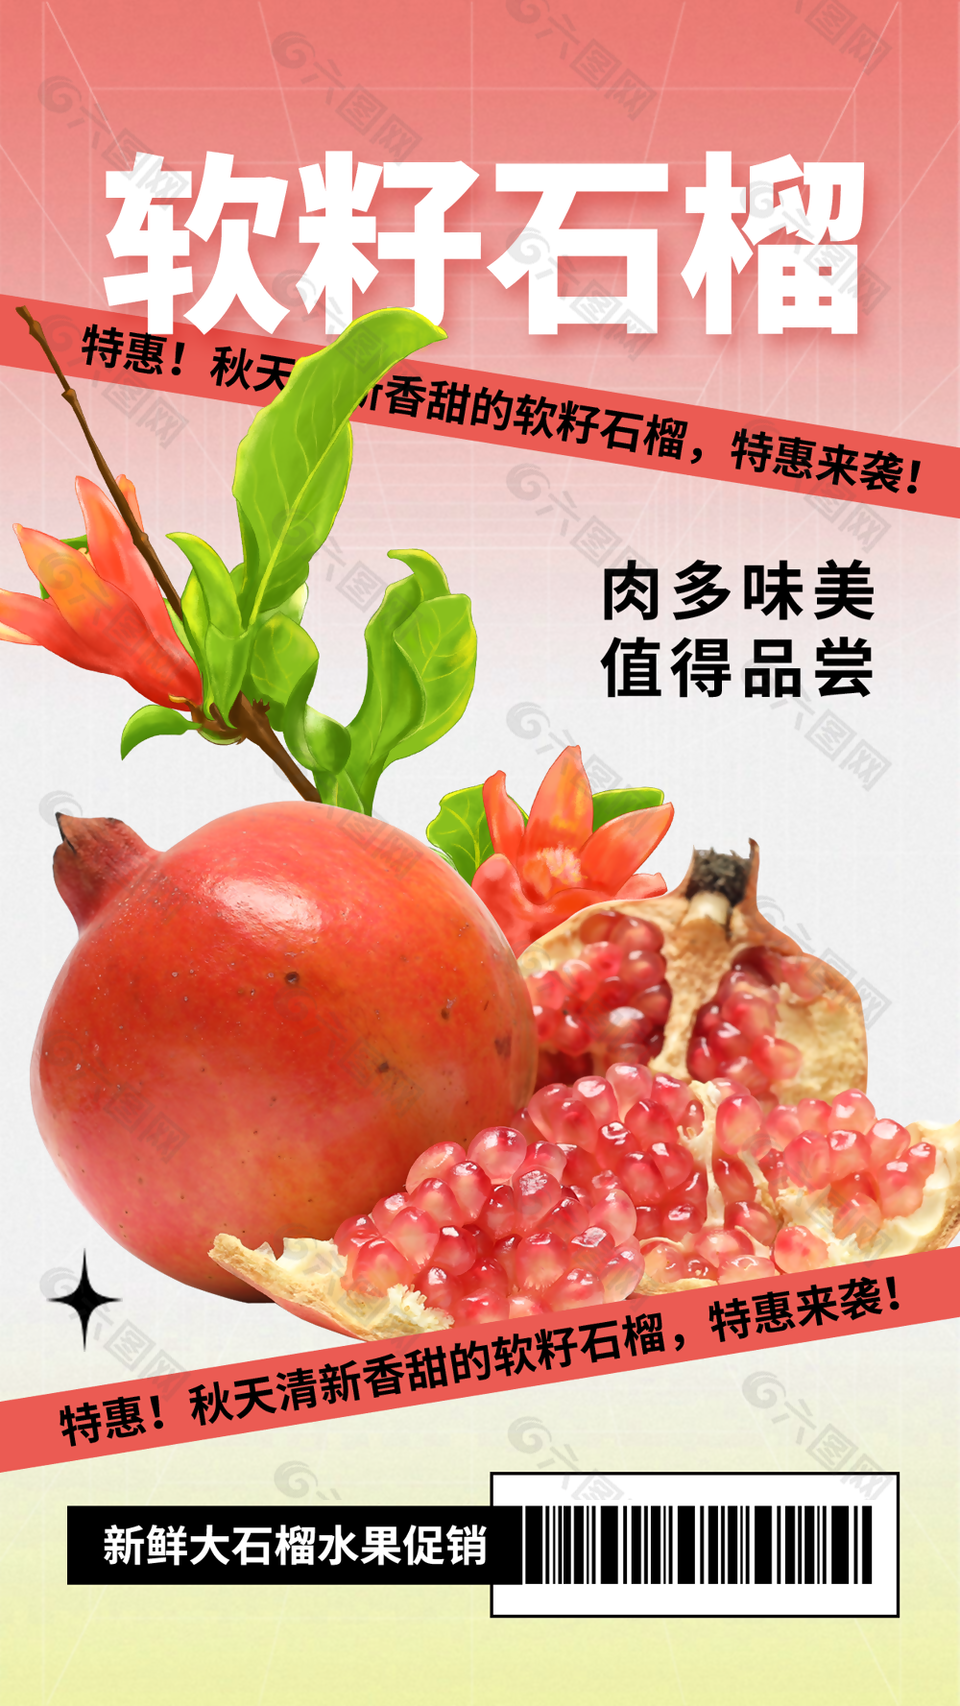 清新香甜软籽石榴活动促销海报图设计